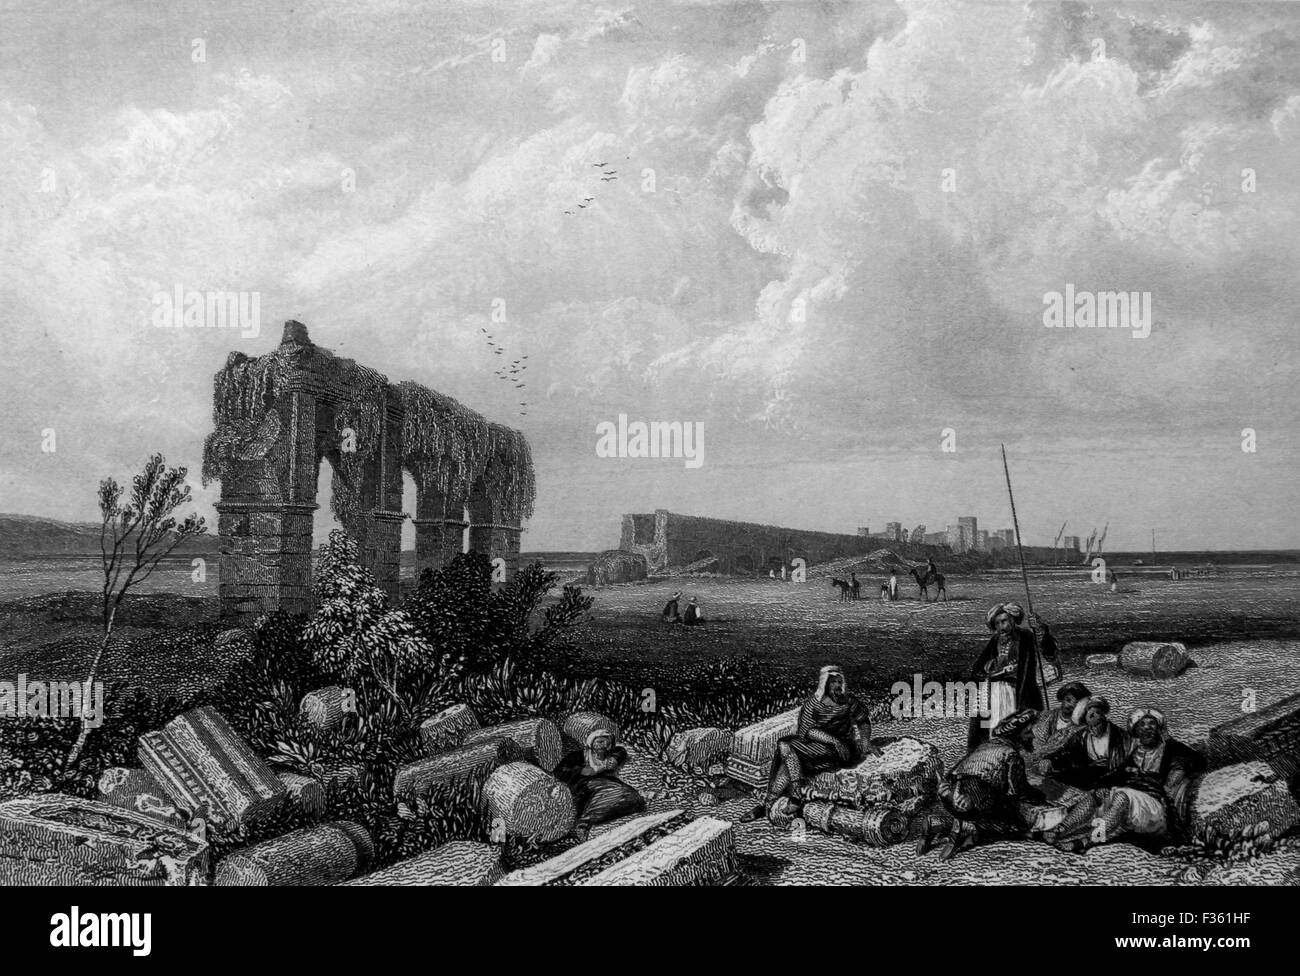 Las Ruinas de Tiro ahora en el Líbano moderno. Ilustración en blanco y negro de paisajes de la Biblia Foto de stock